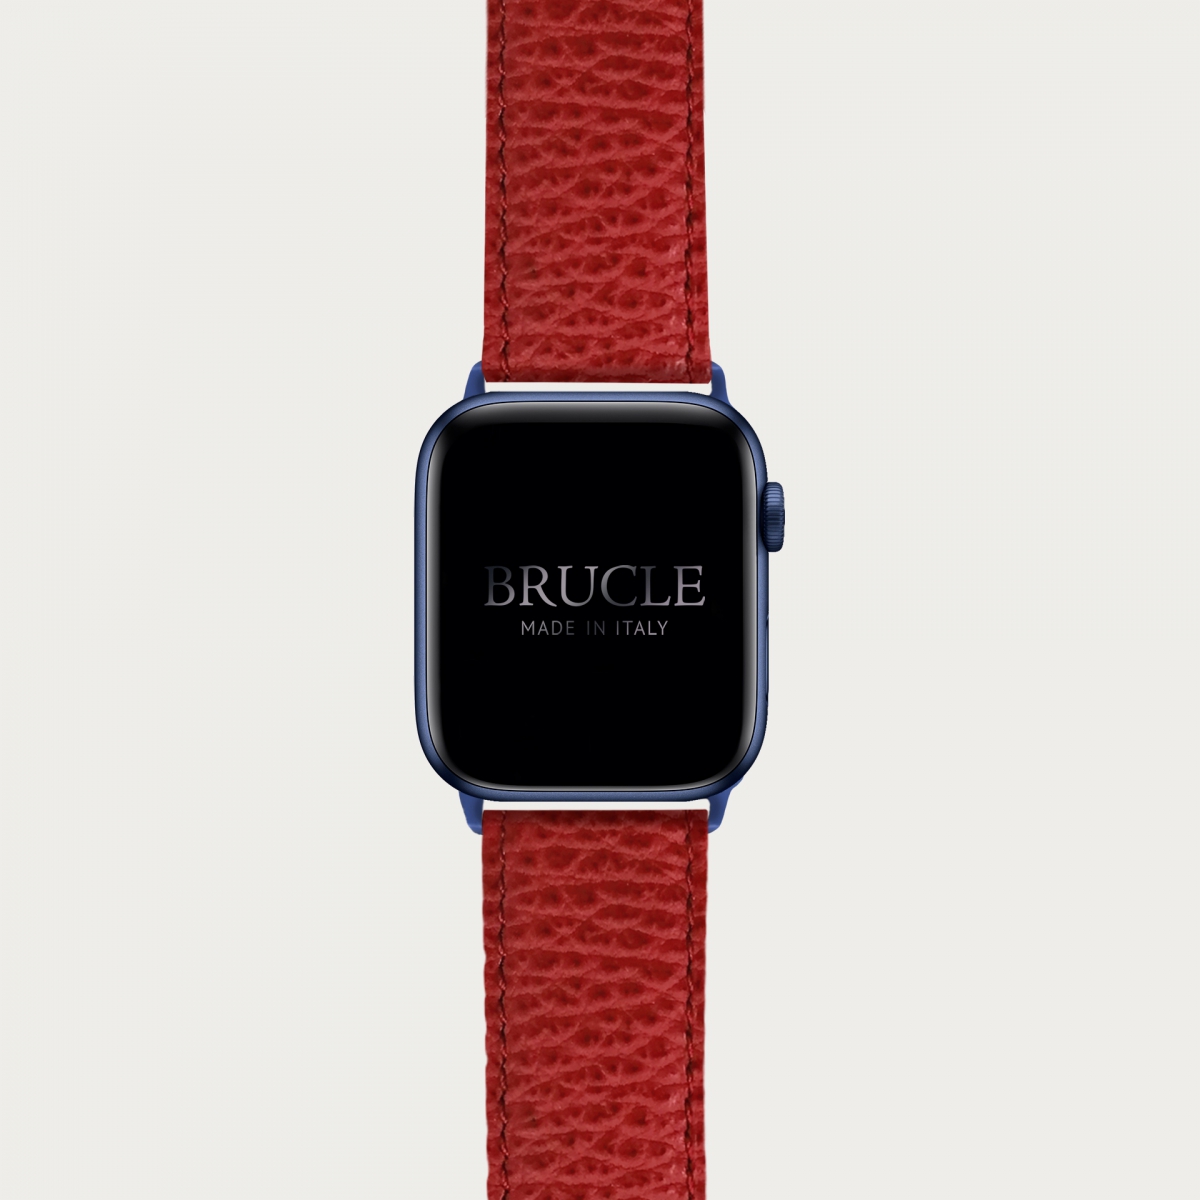 Bracelet en cuir pour montre, Apple Watch et Samsung smartwatch, imprimé rouge